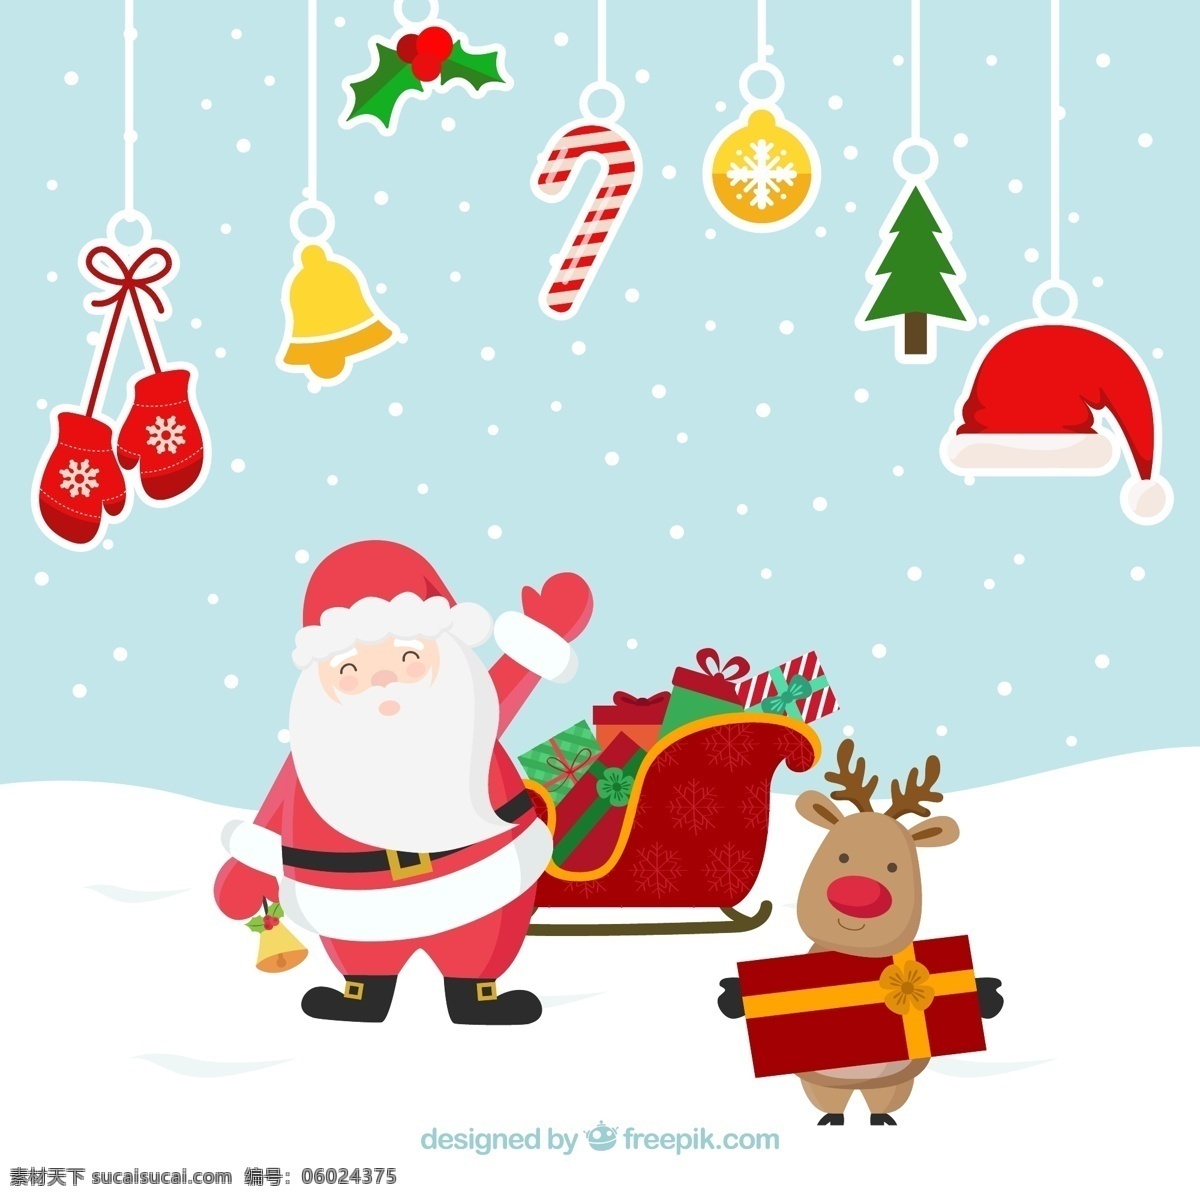 圣诞快乐 圣诞元素 麋鹿 雪橇车 圣诞爷爷 礼物 喜庆 红色 绿色 圣诞帽子 圣诞手套 圣诞铃铛